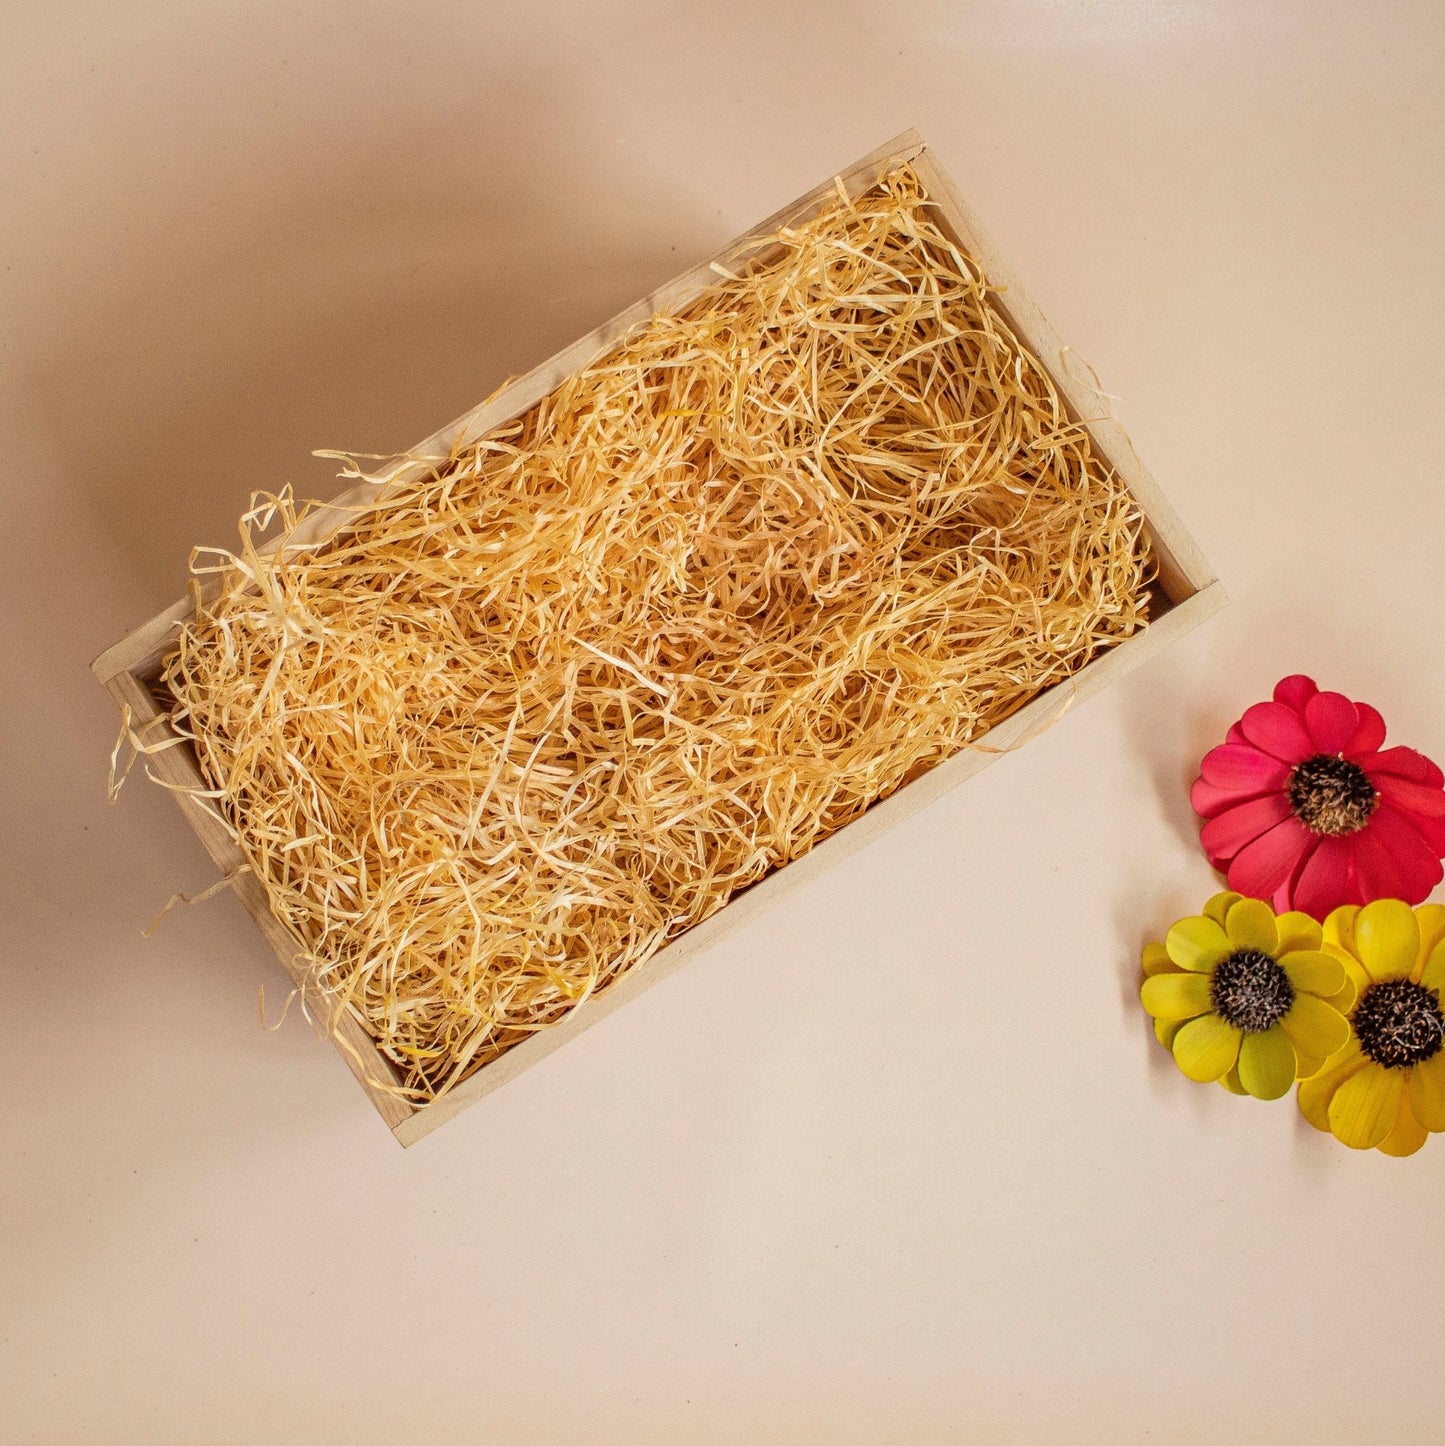 Thela : Hamper Gift Basket - Ebony WoodcraftsConcept Gifting Bases